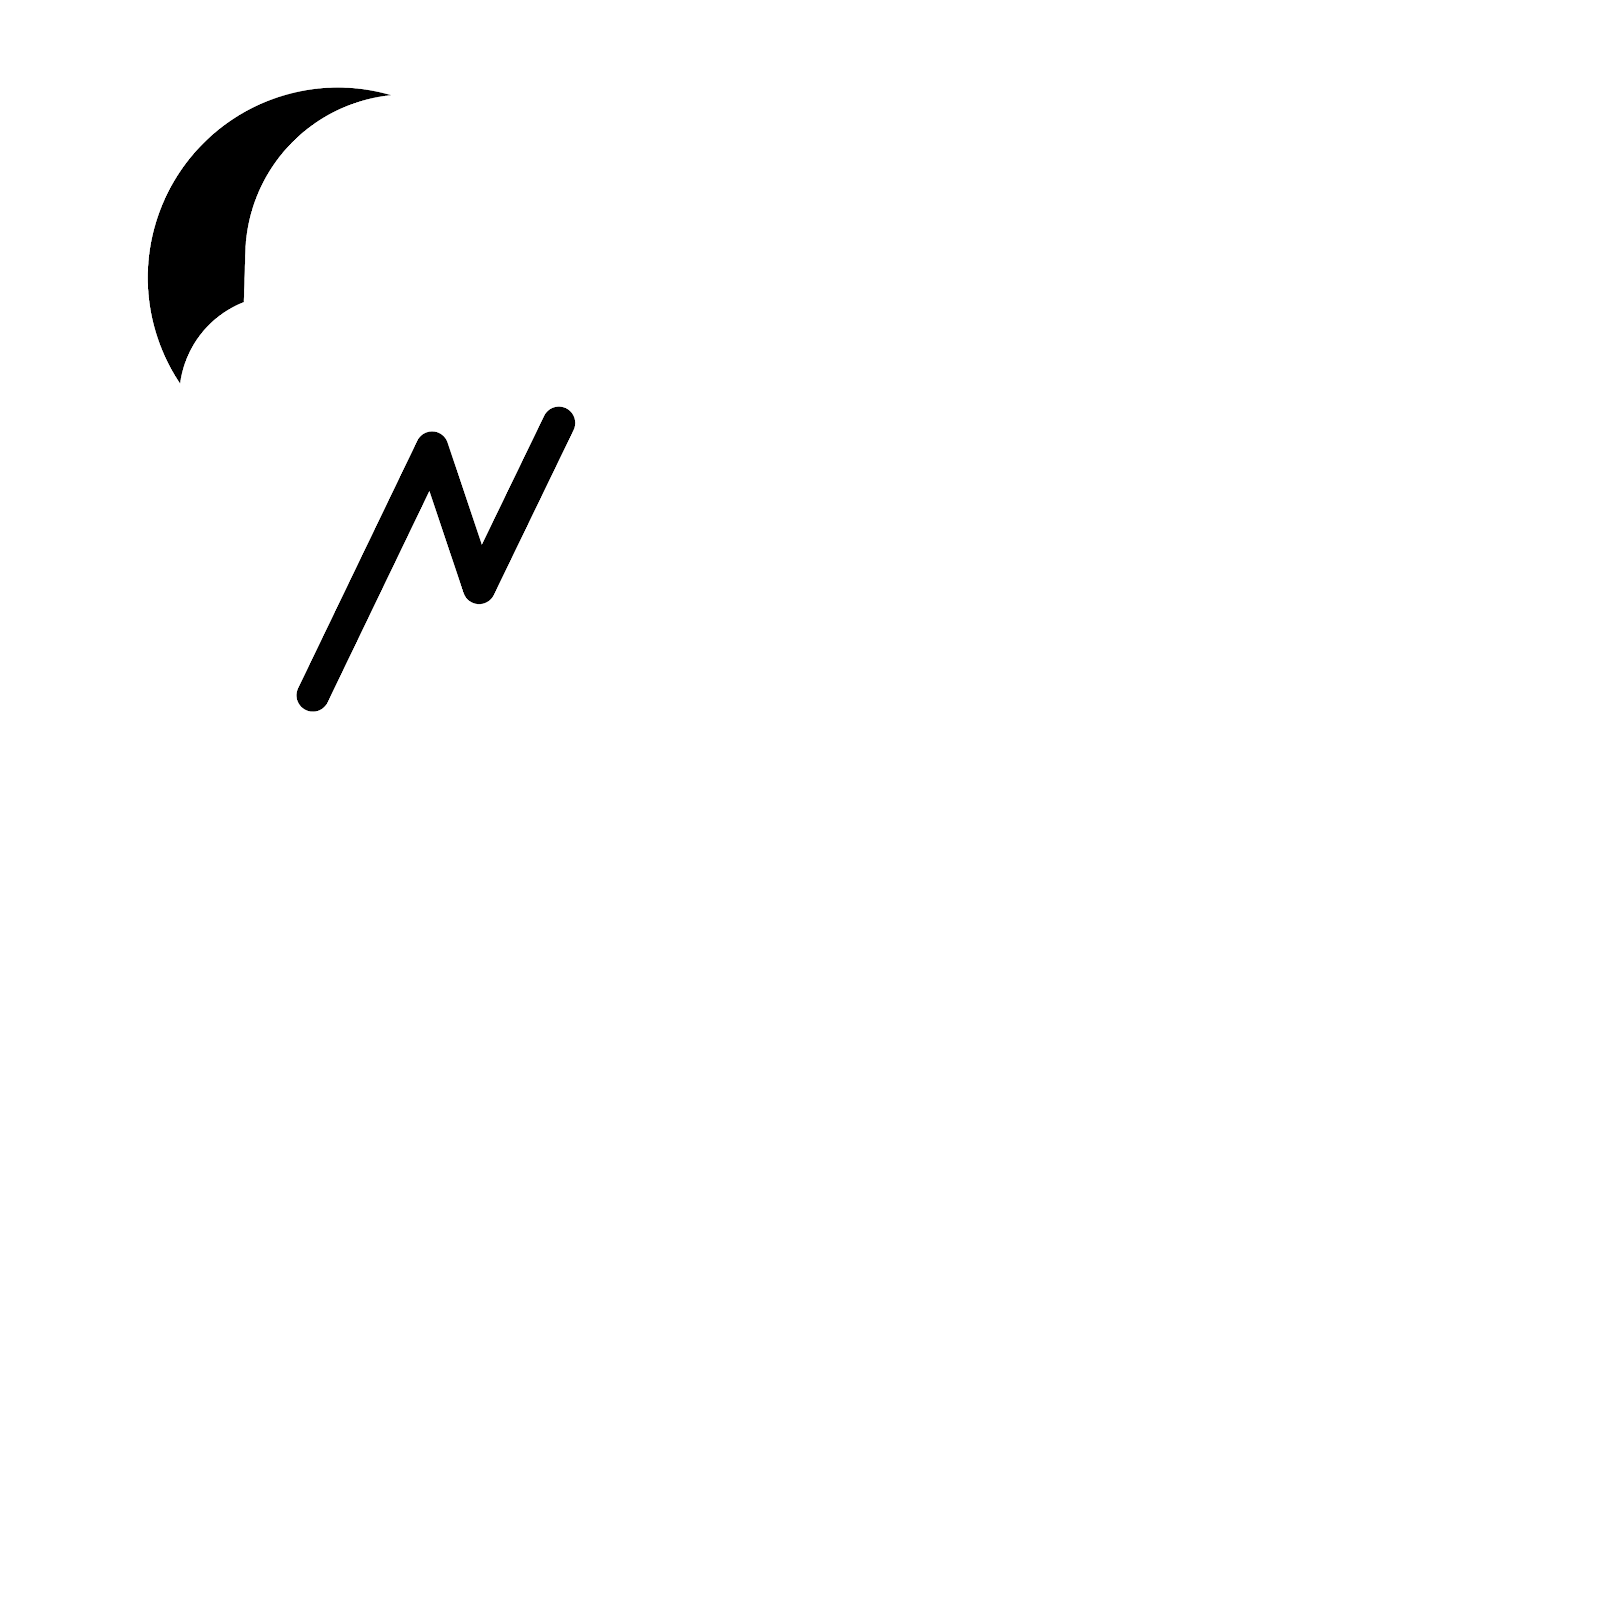 Nachturne Design Labs, LLC